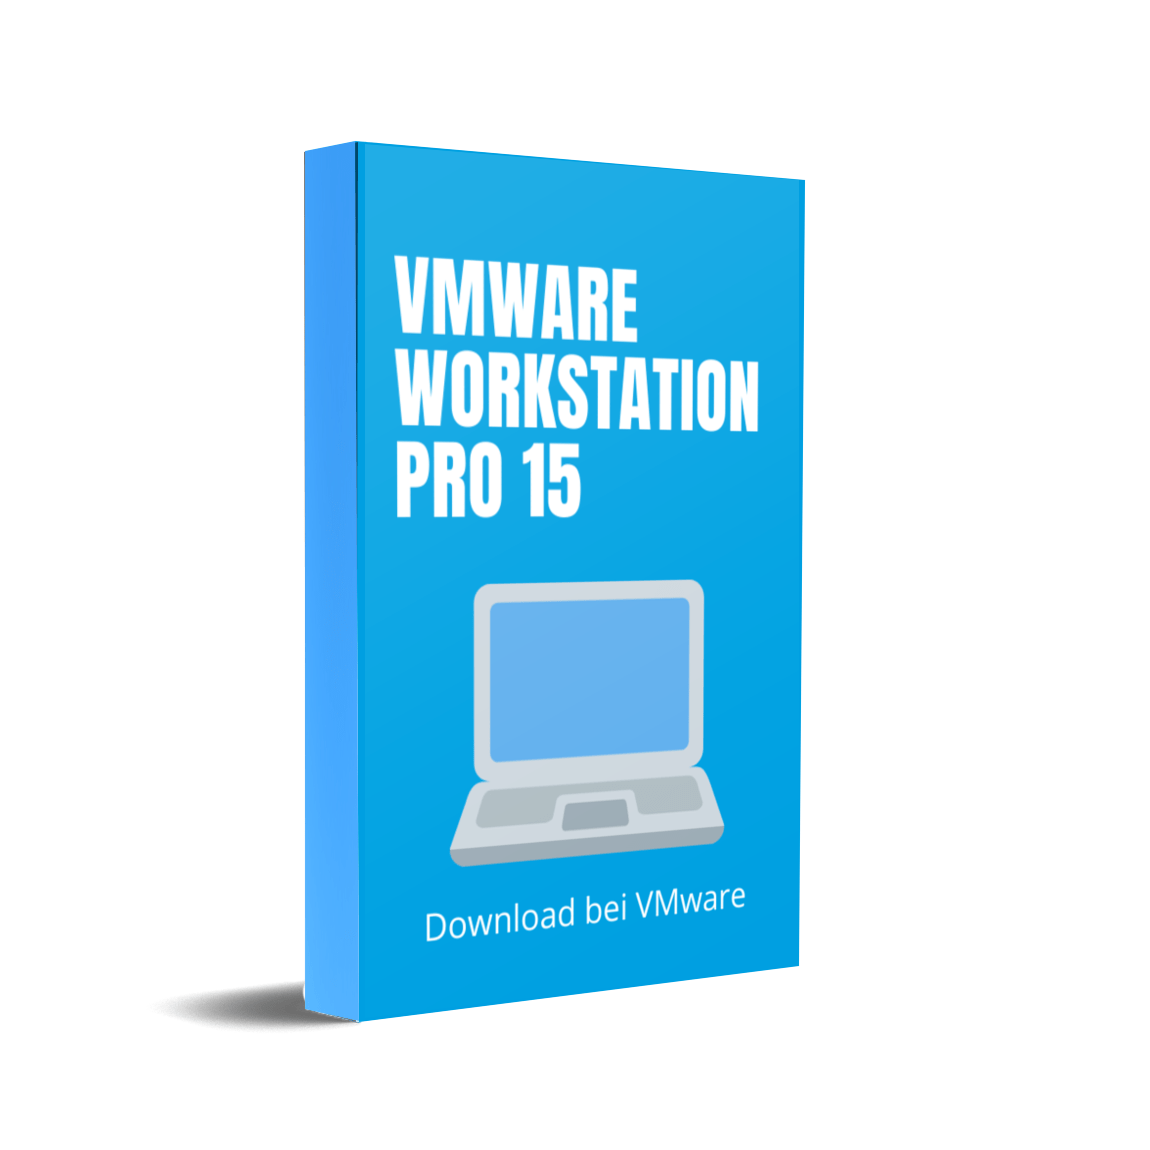 vmware workstation 15.5.2 pro download